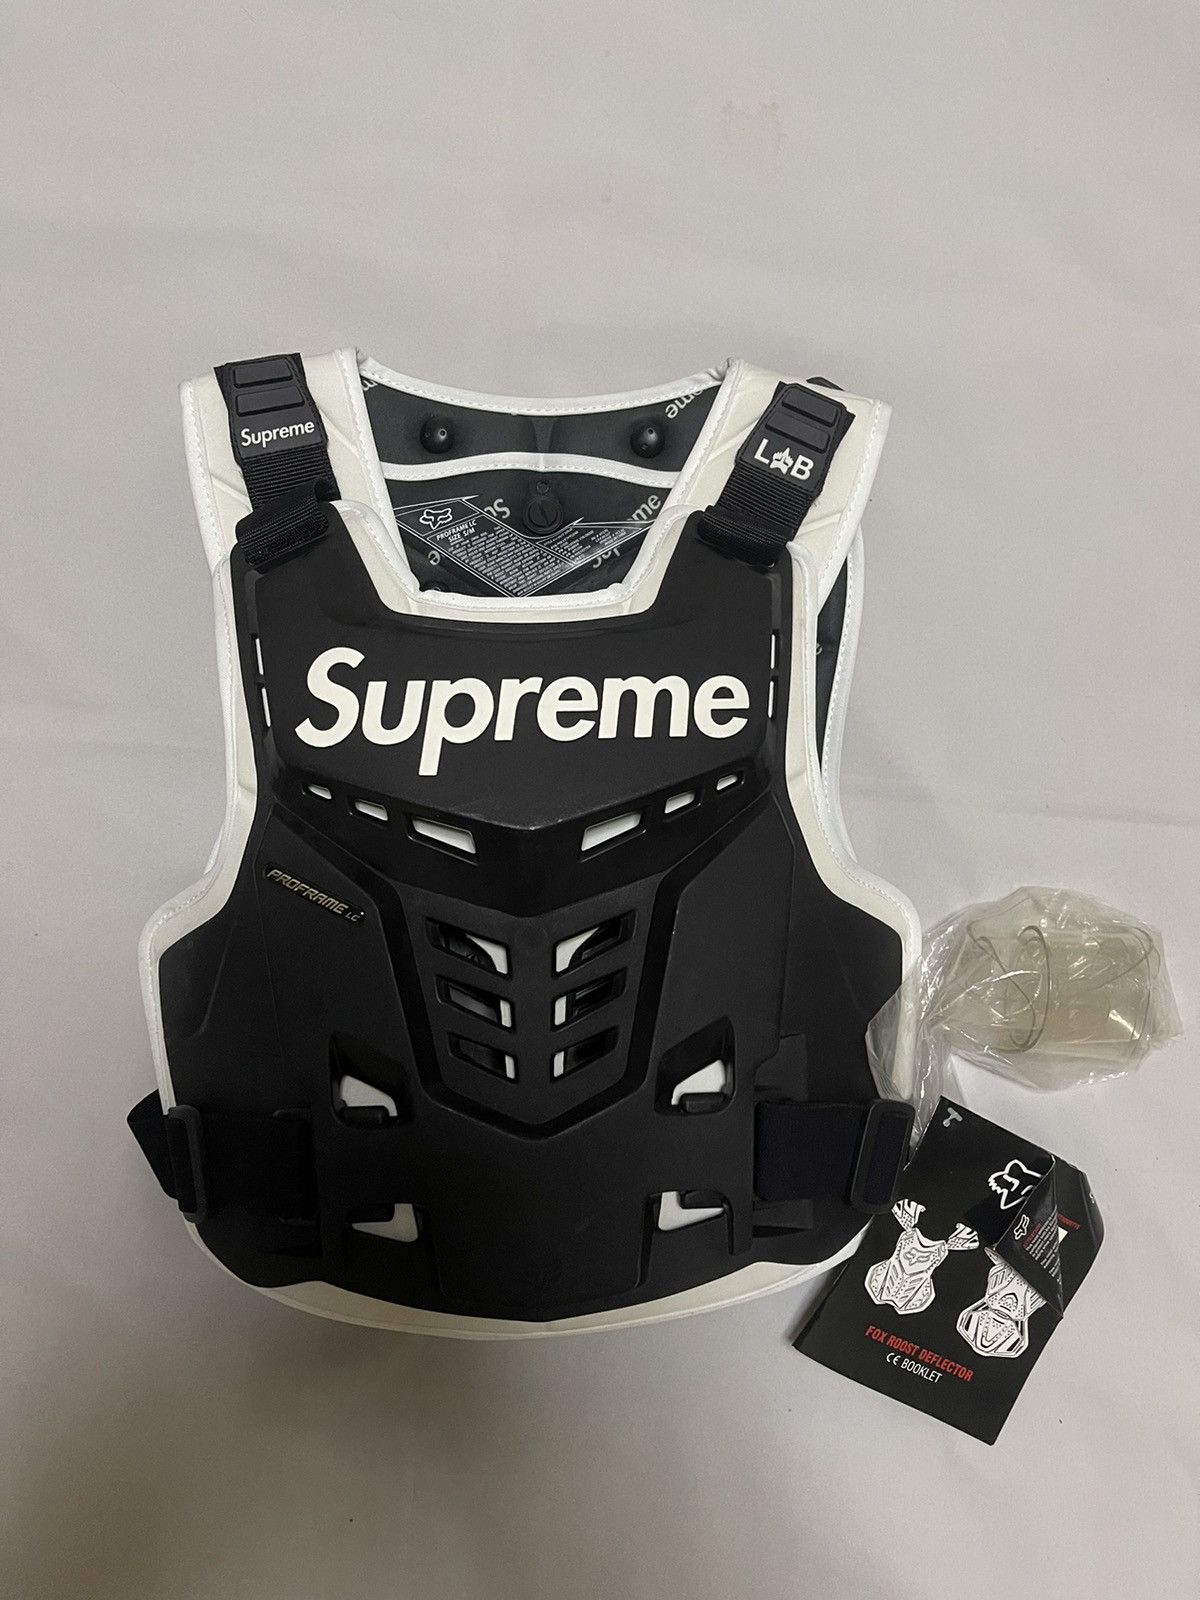 Supreme Supreme Fox Racing profram vest black S/m | Grailed